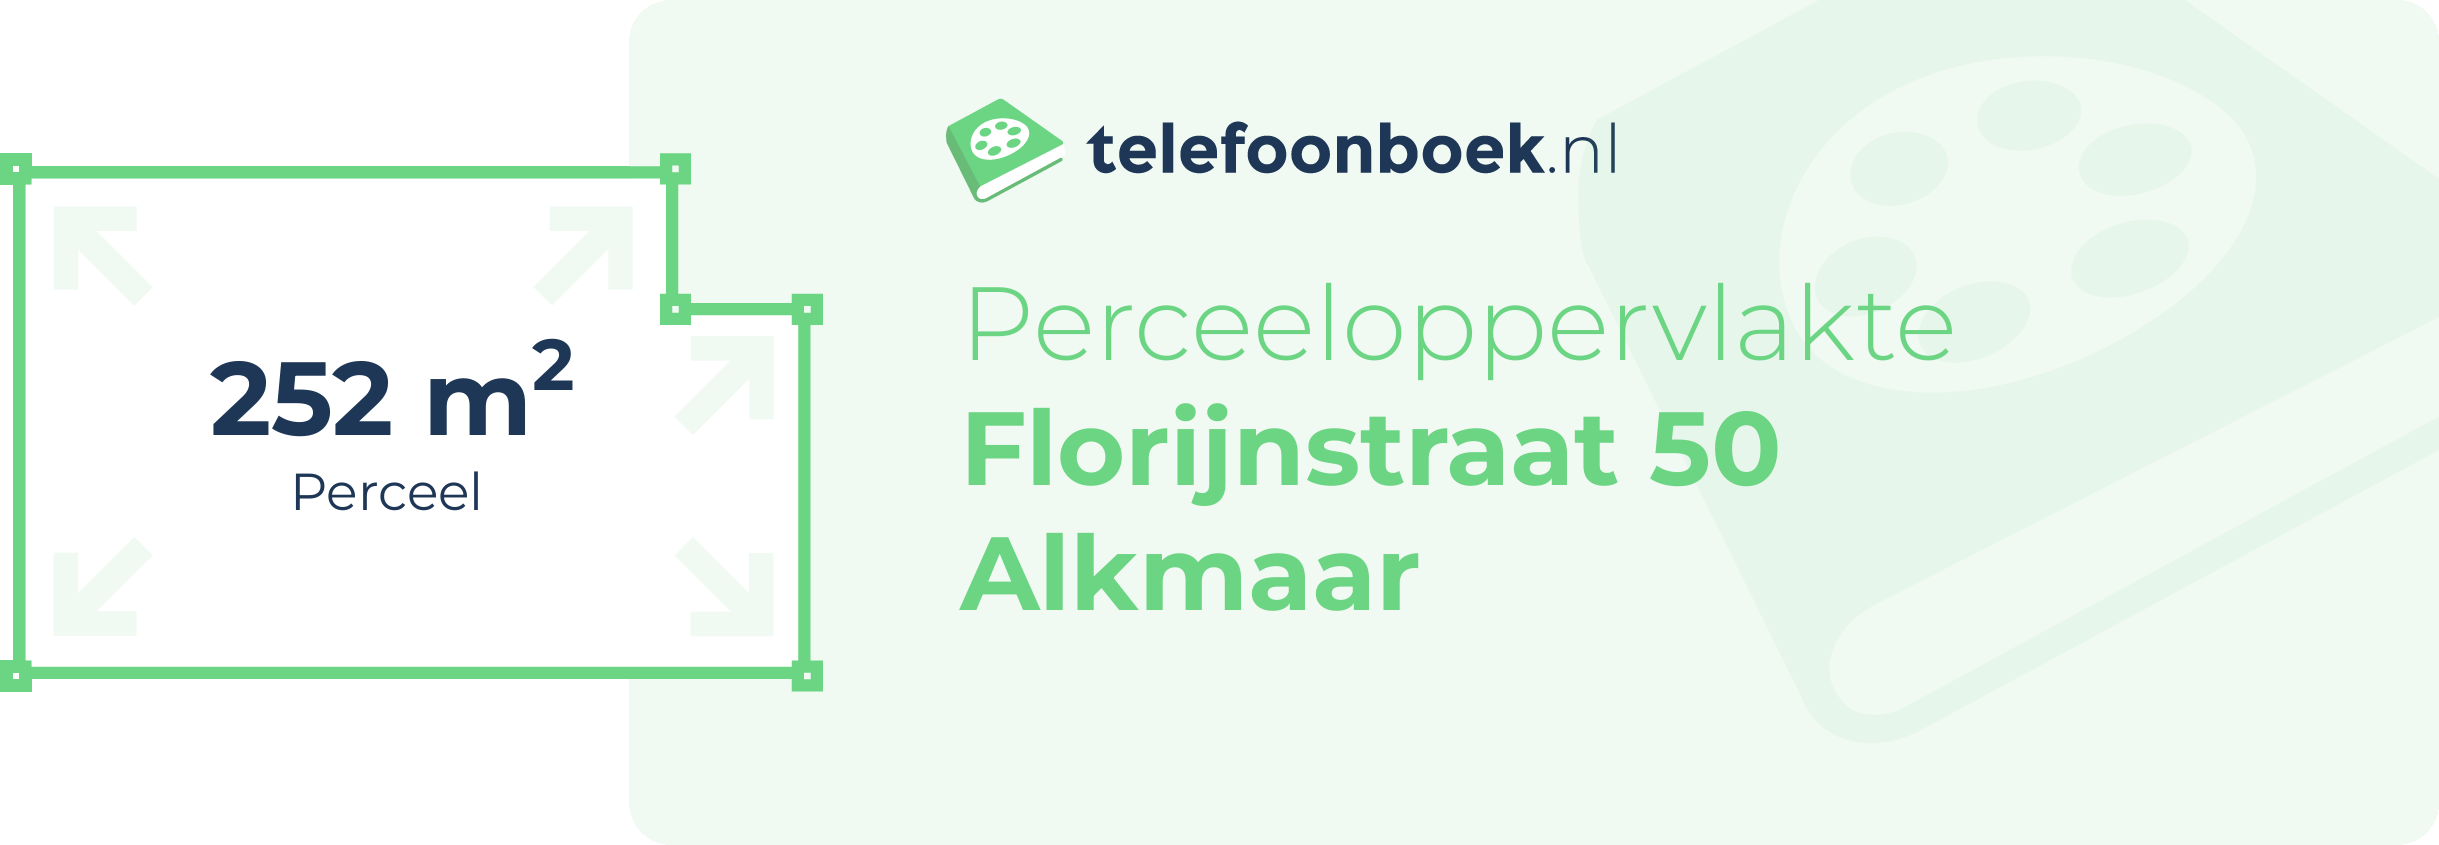 Perceeloppervlakte Florijnstraat 50 Alkmaar